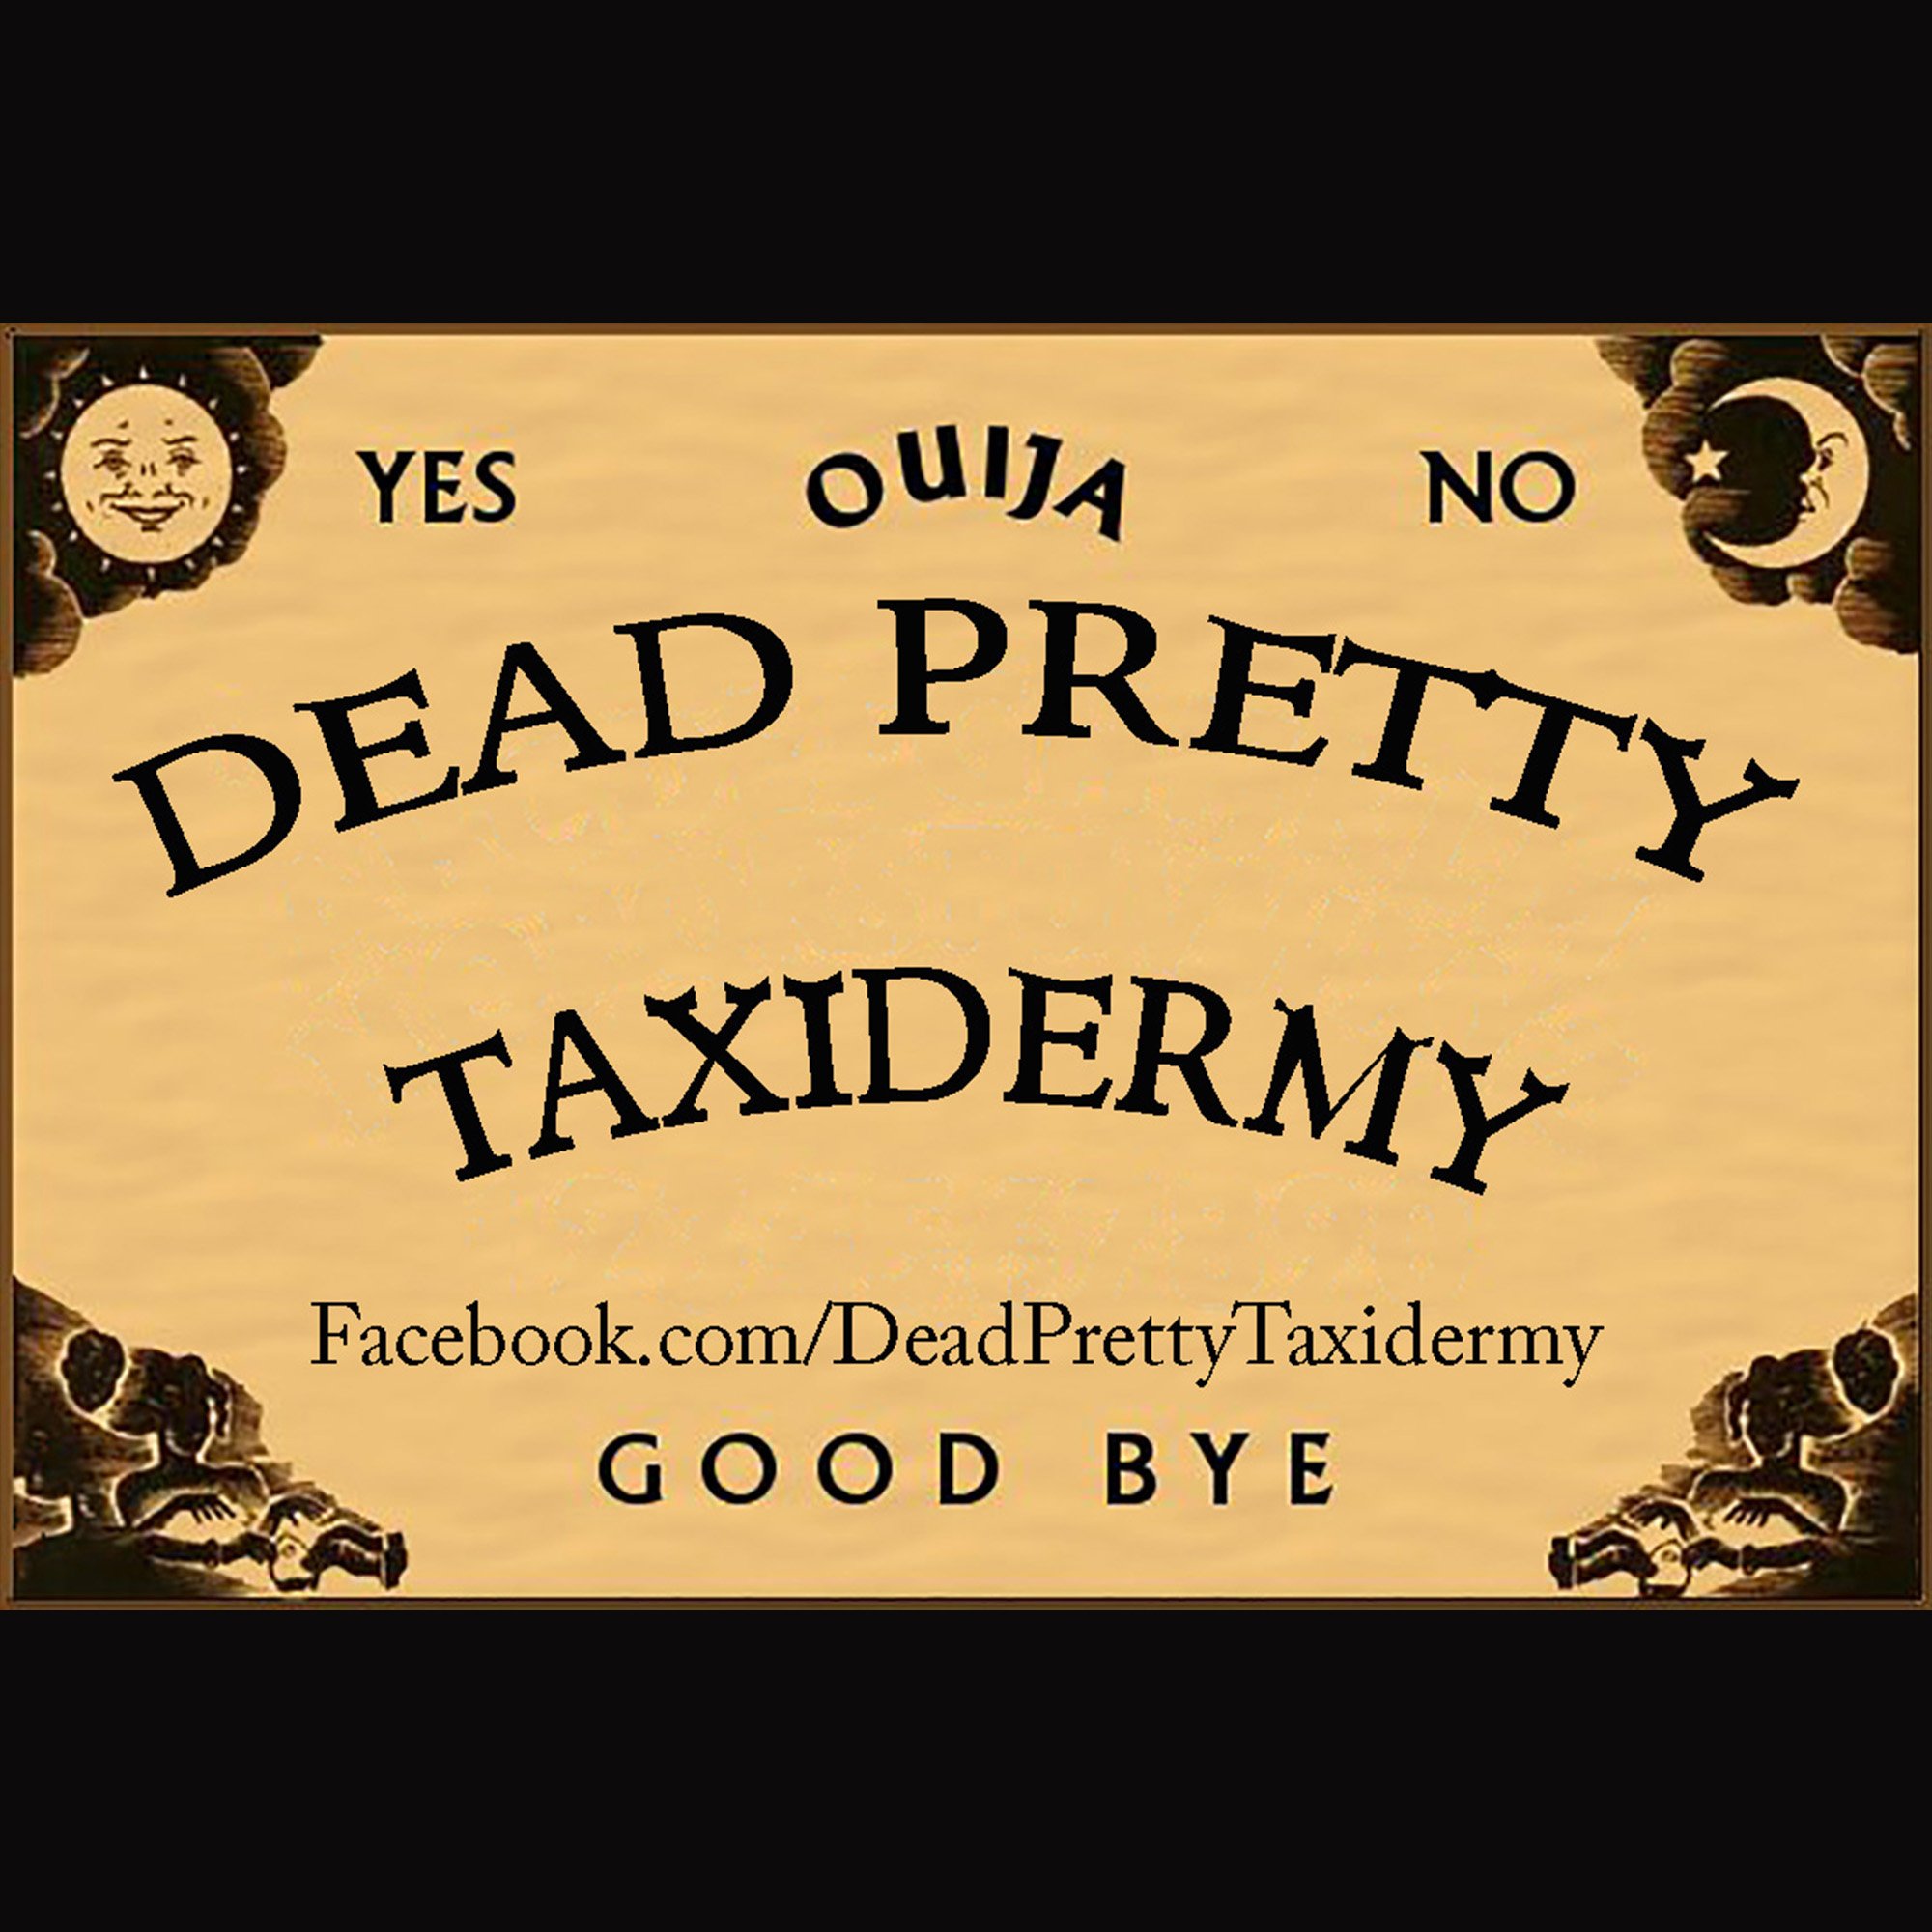 DeadPretty Taxidermy